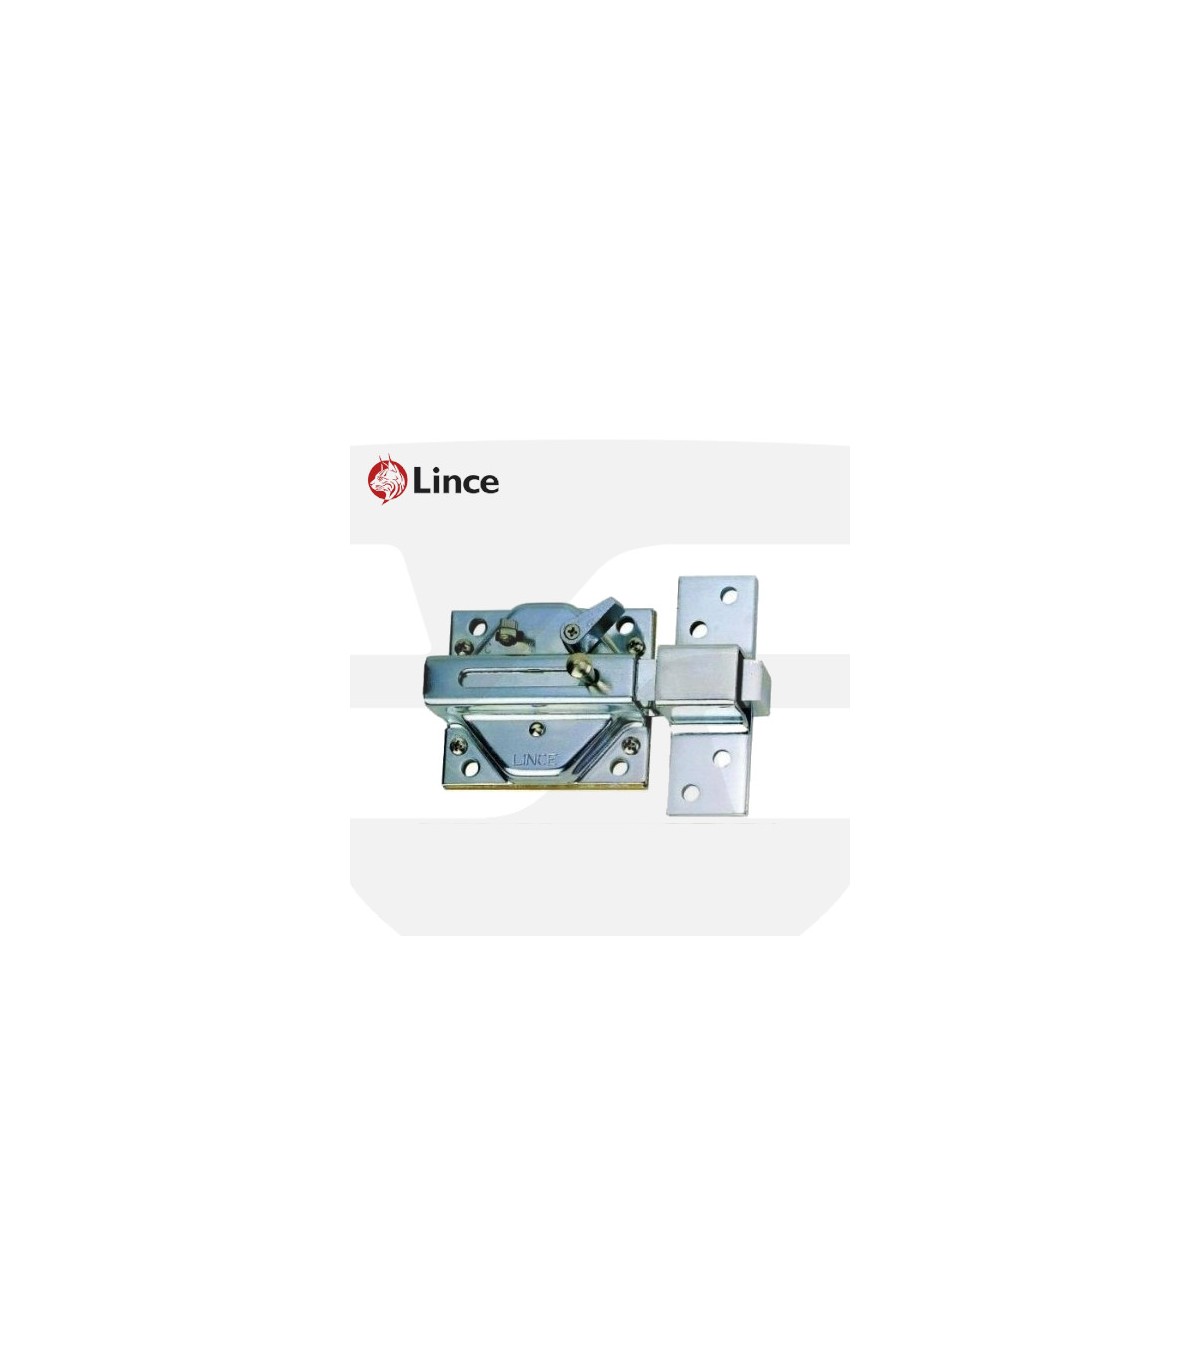 Cerrojo máxima seguridad con alarma marca Lince modelo 7930 cromado